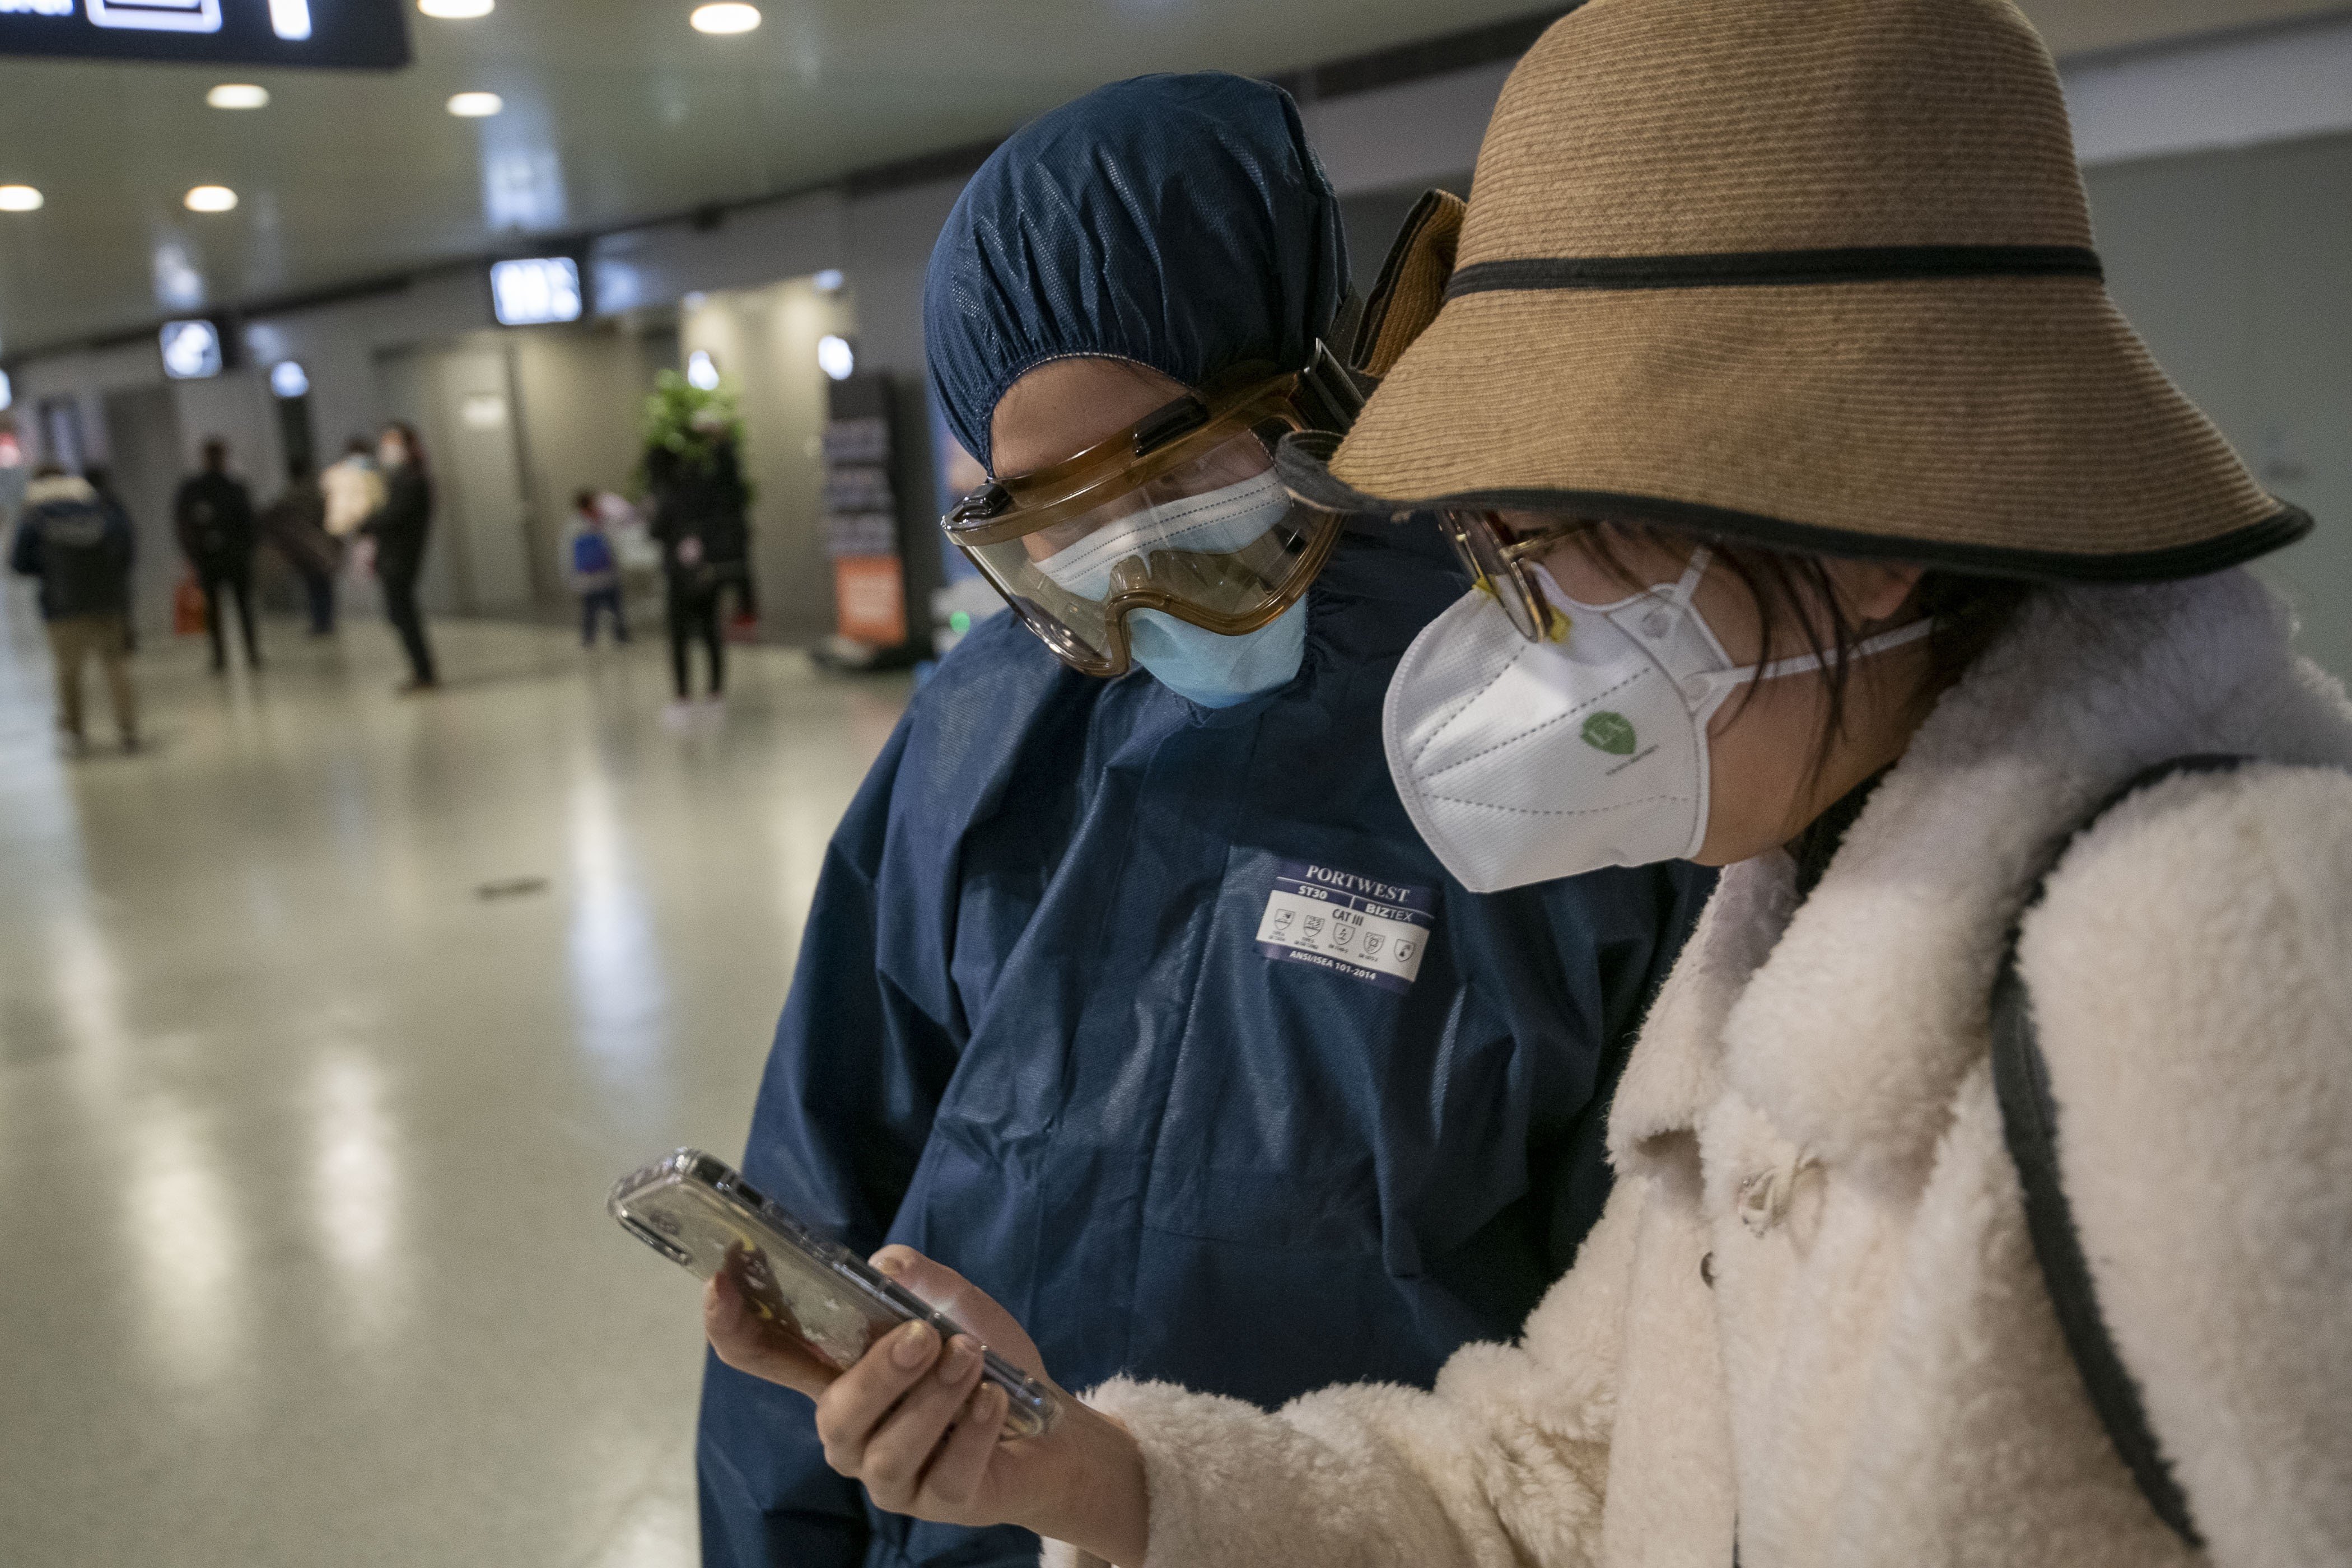 Pifia de Antena 3 creando alarma por el coronavirus en Madrid: ni idea de chino